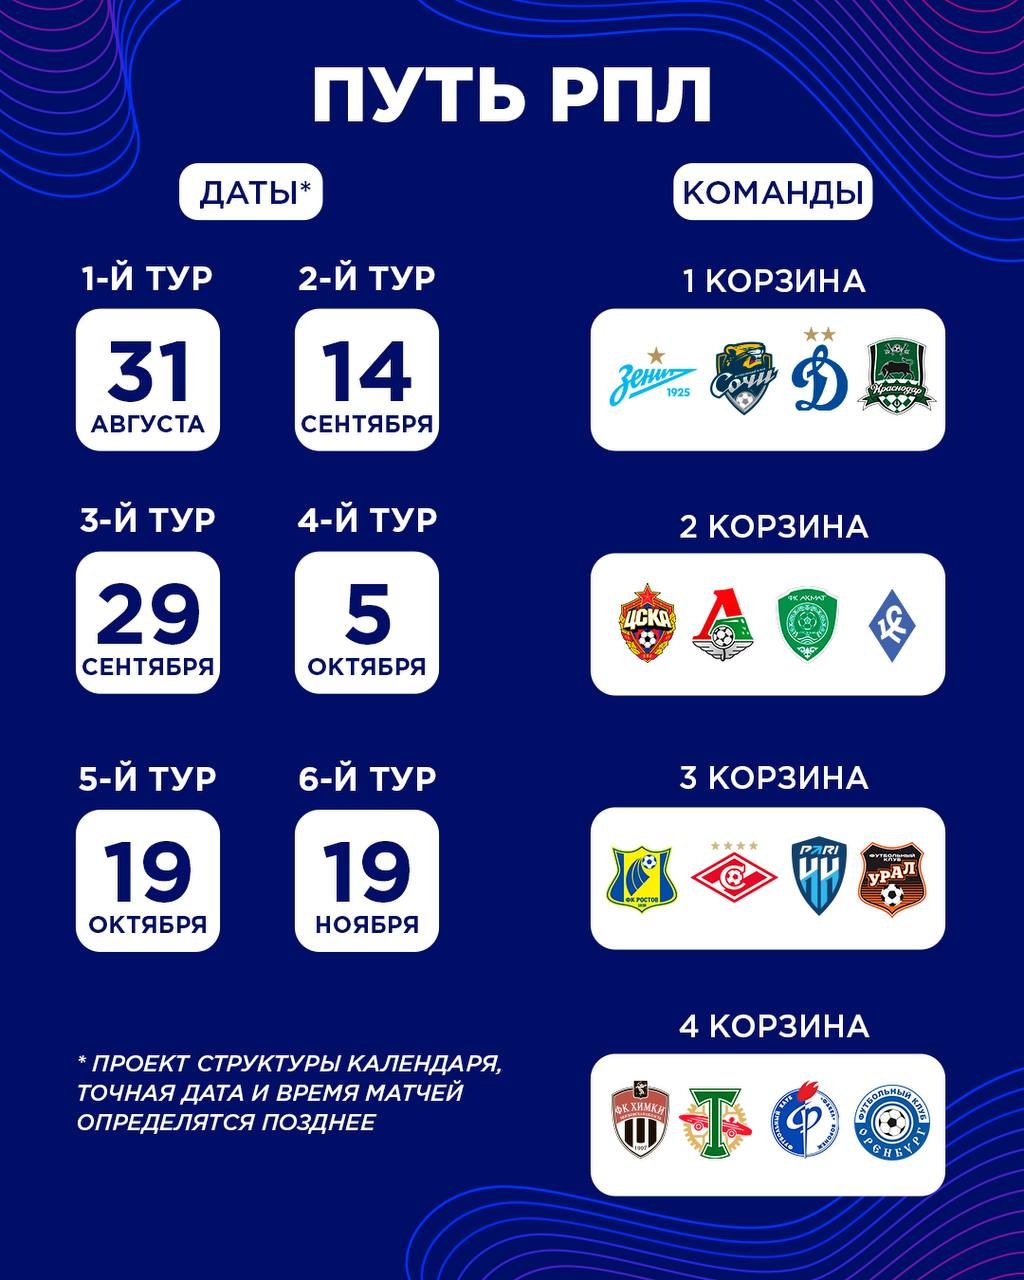 Стал известен состав корзин при жеребьевке группового этапа Пути РПЛ Кубка России сезона-2022/23